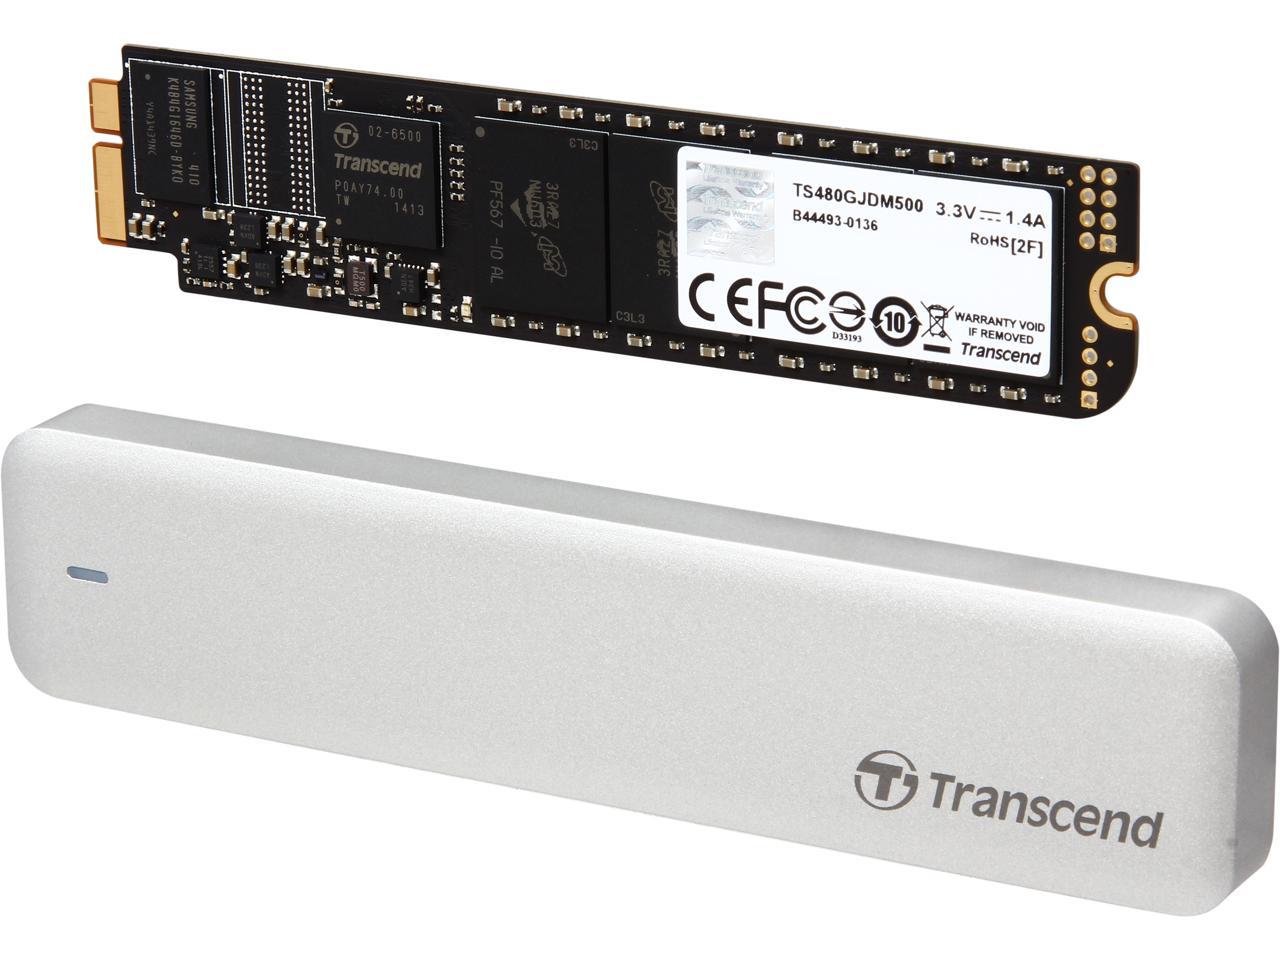 Transcend JetDrive 500 480GB USB 3.0 / SATA 6Gb/s MLC Internal